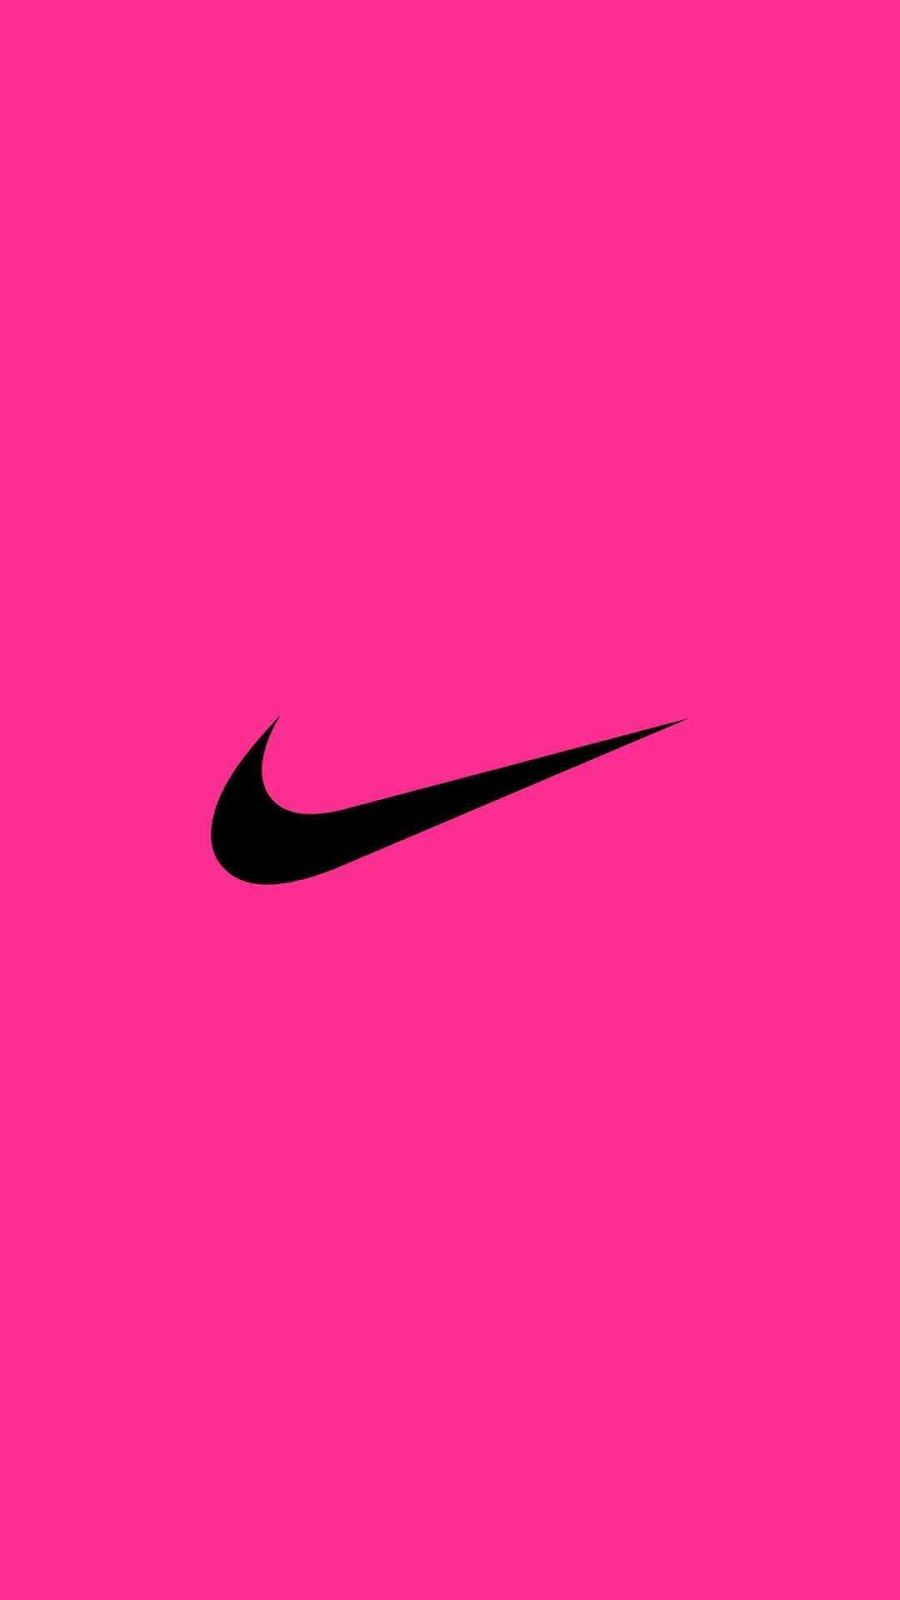 Nếu bạn đam mê thể thao và yêu thích Nike, hãy thử sử dụng hình nền Nike hồng trên máy tính của bạn. Được thiết kế với những đường viền tinh tế và phối màu nhẹ nhàng, hình ảnh này sẽ mang lại một cảm giác trẻ trung và vui tươi cho không gian làm việc của bạn. Hãy để hình nền Nike hồng chúc bạn một ngày mới đầy năng lượng và sáng tạo.